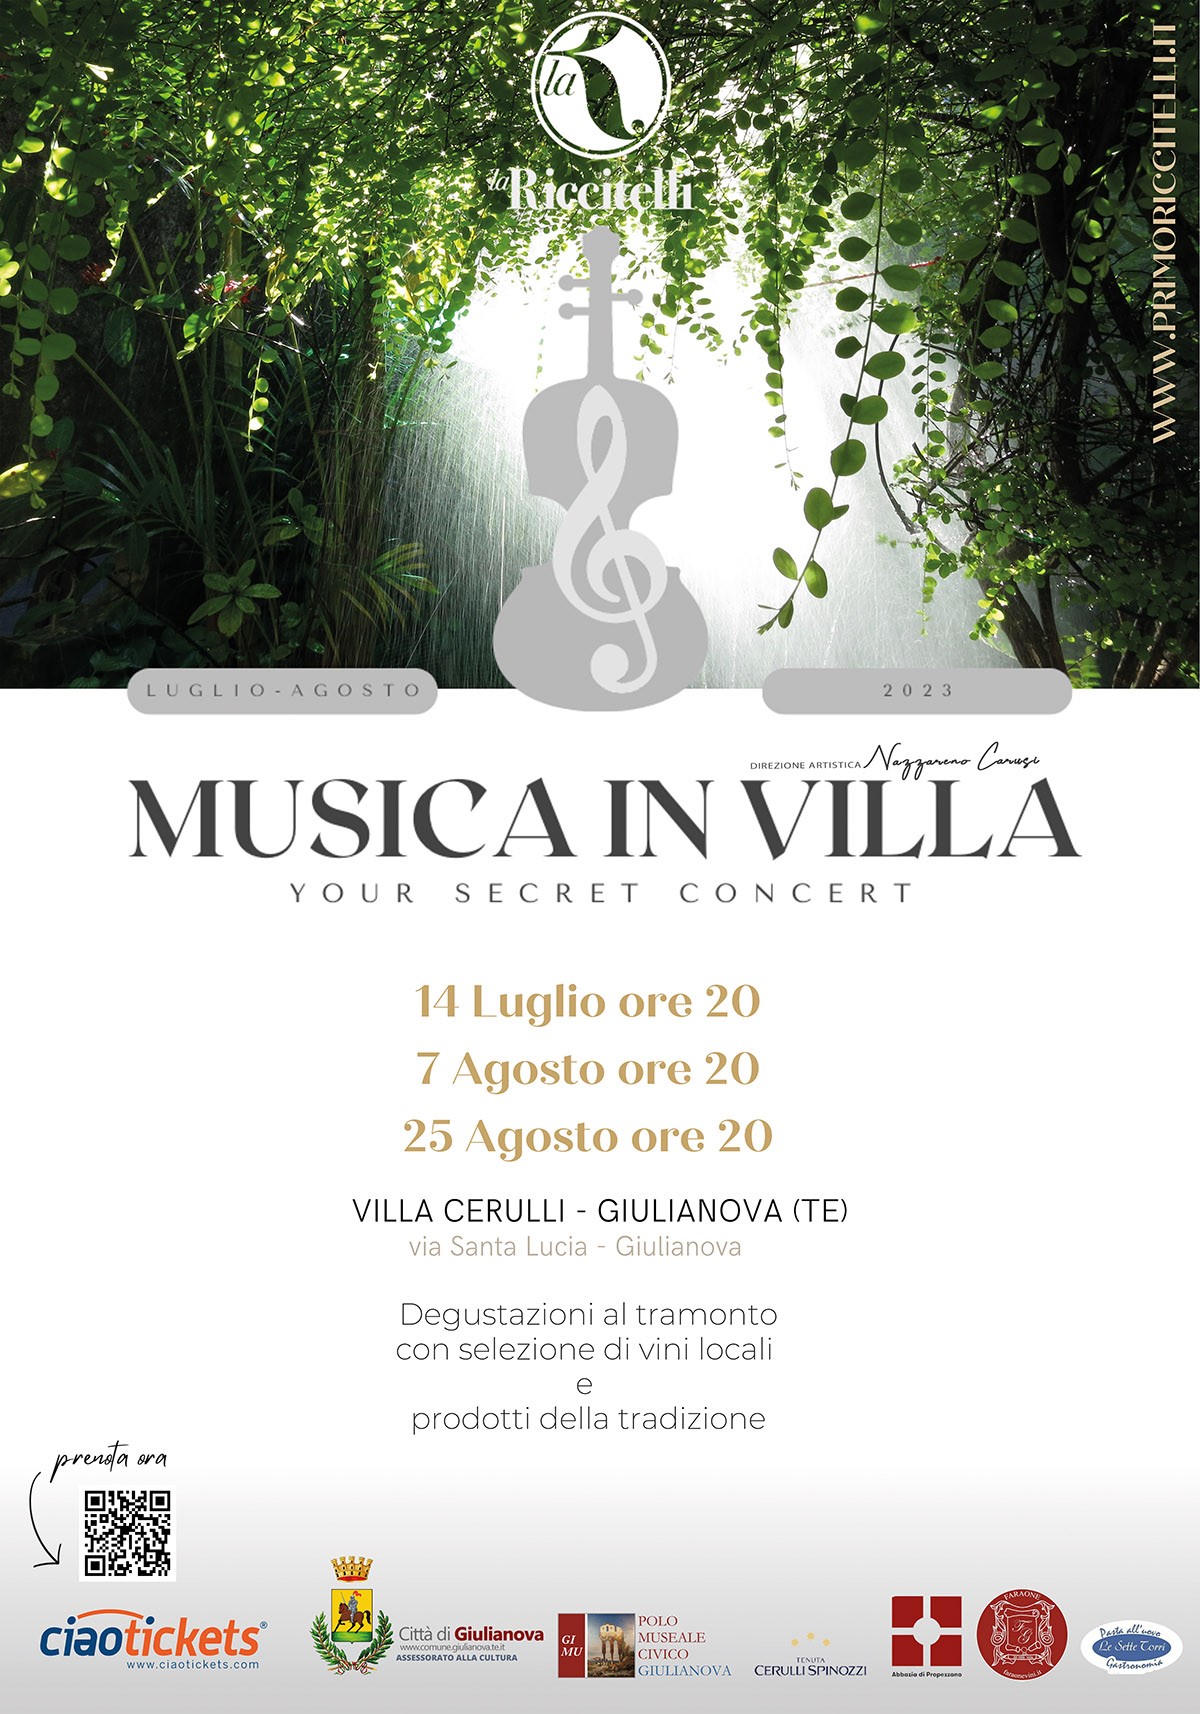 La “Riccitelli” a Giulianova con “Musica in Villa”: venerdì 14 luglio  il  primo concerto a Villa Cerulli